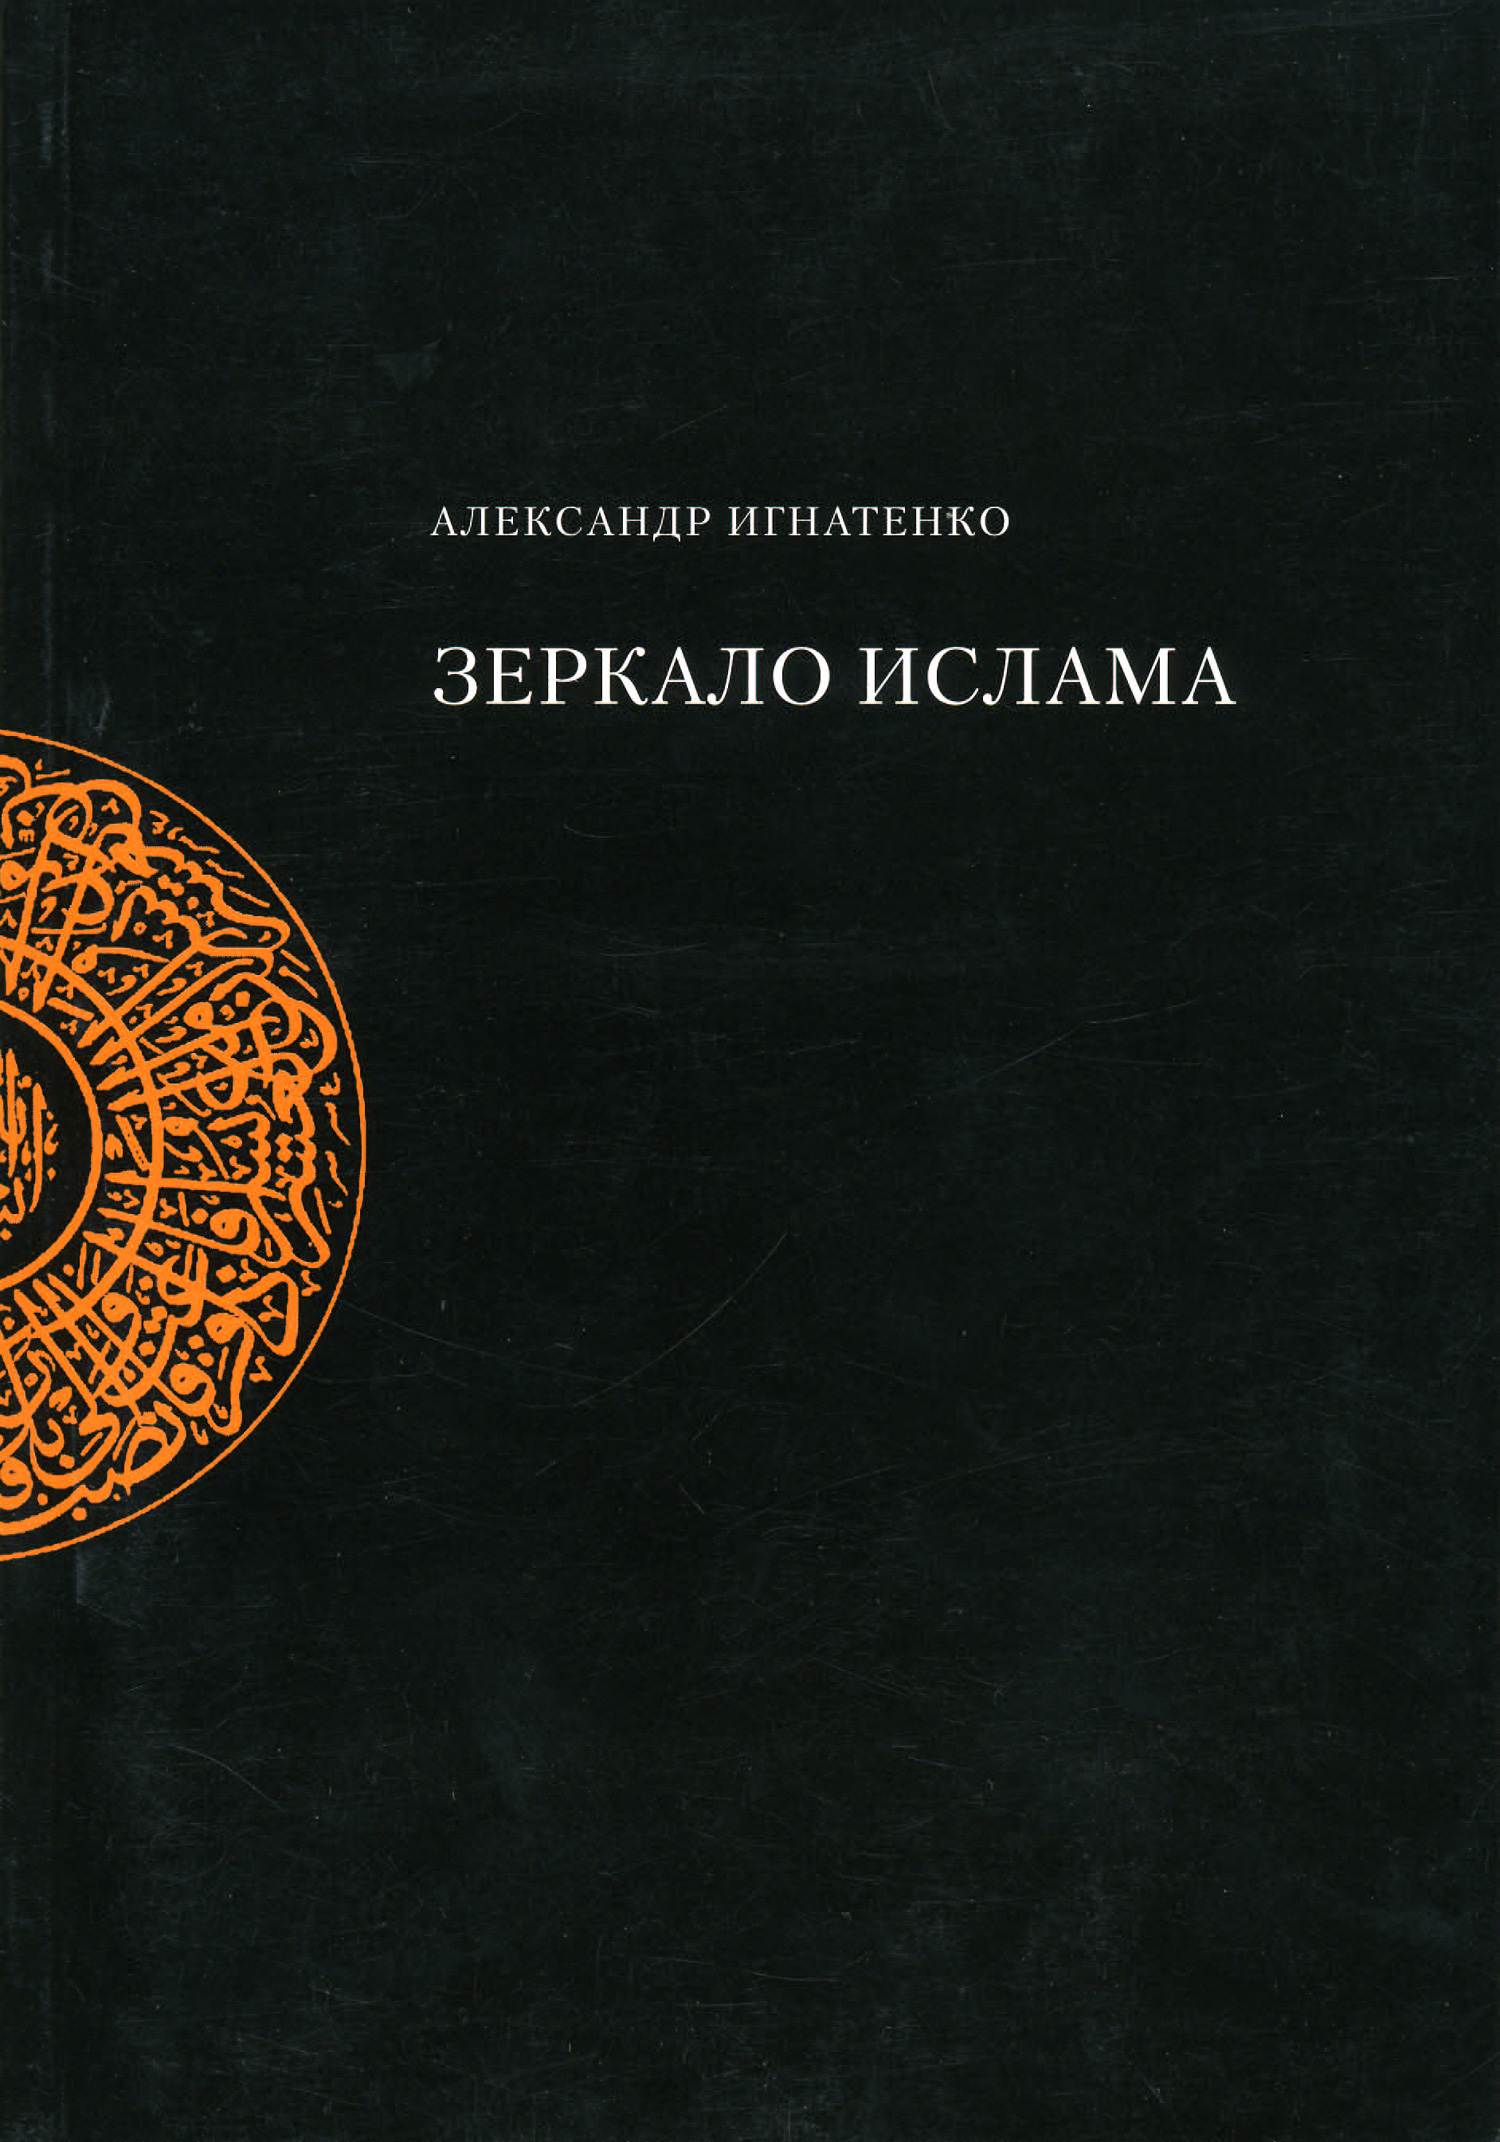 Книга Зеркало ислама из серии , созданная Александр Игнатенко, может относится к жанру Религиоведение, Культурология, Философия. Стоимость книги Зеркало ислама  с идентификатором 3119775 составляет 49.90 руб.